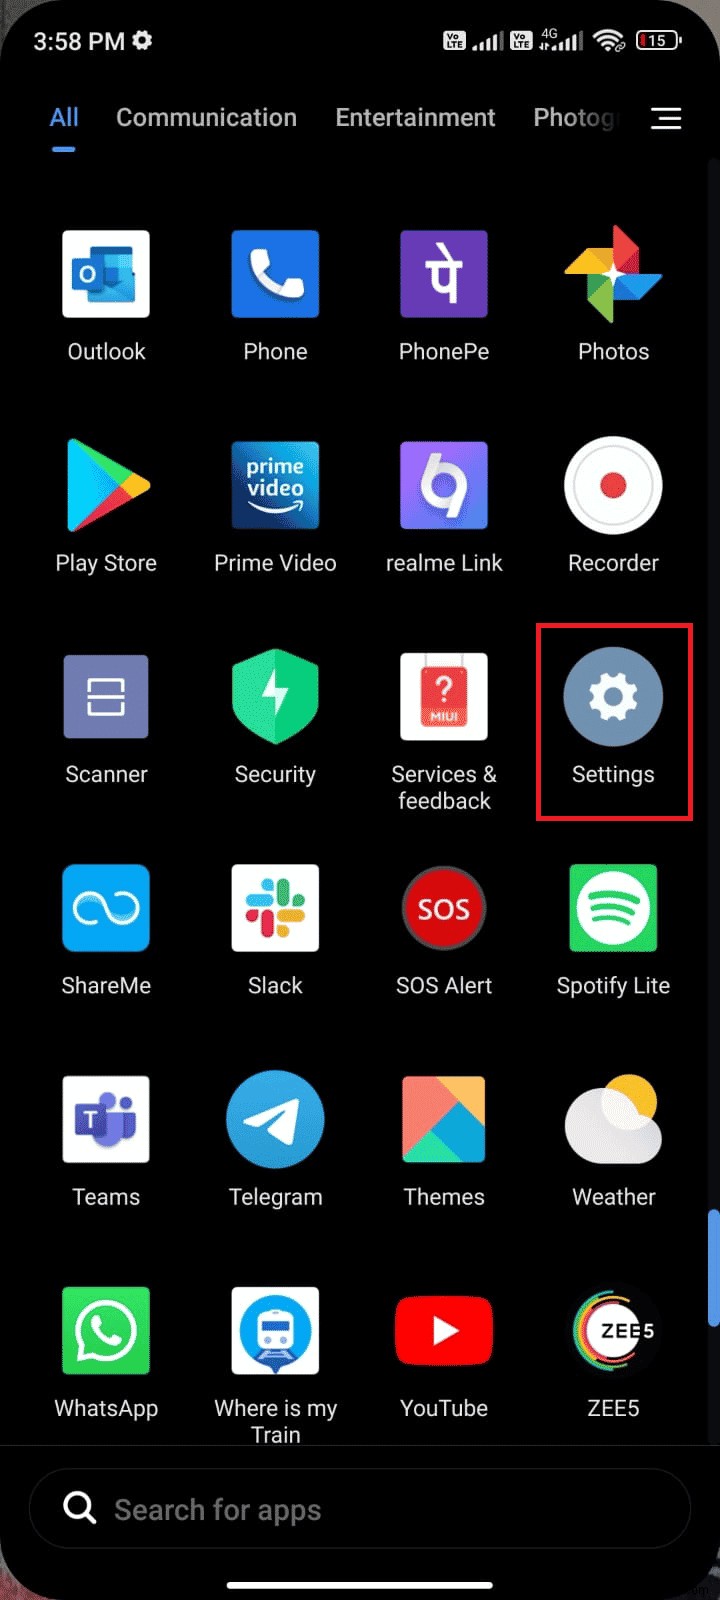 Sửa mã lỗi 495 của Google Play trên Android 